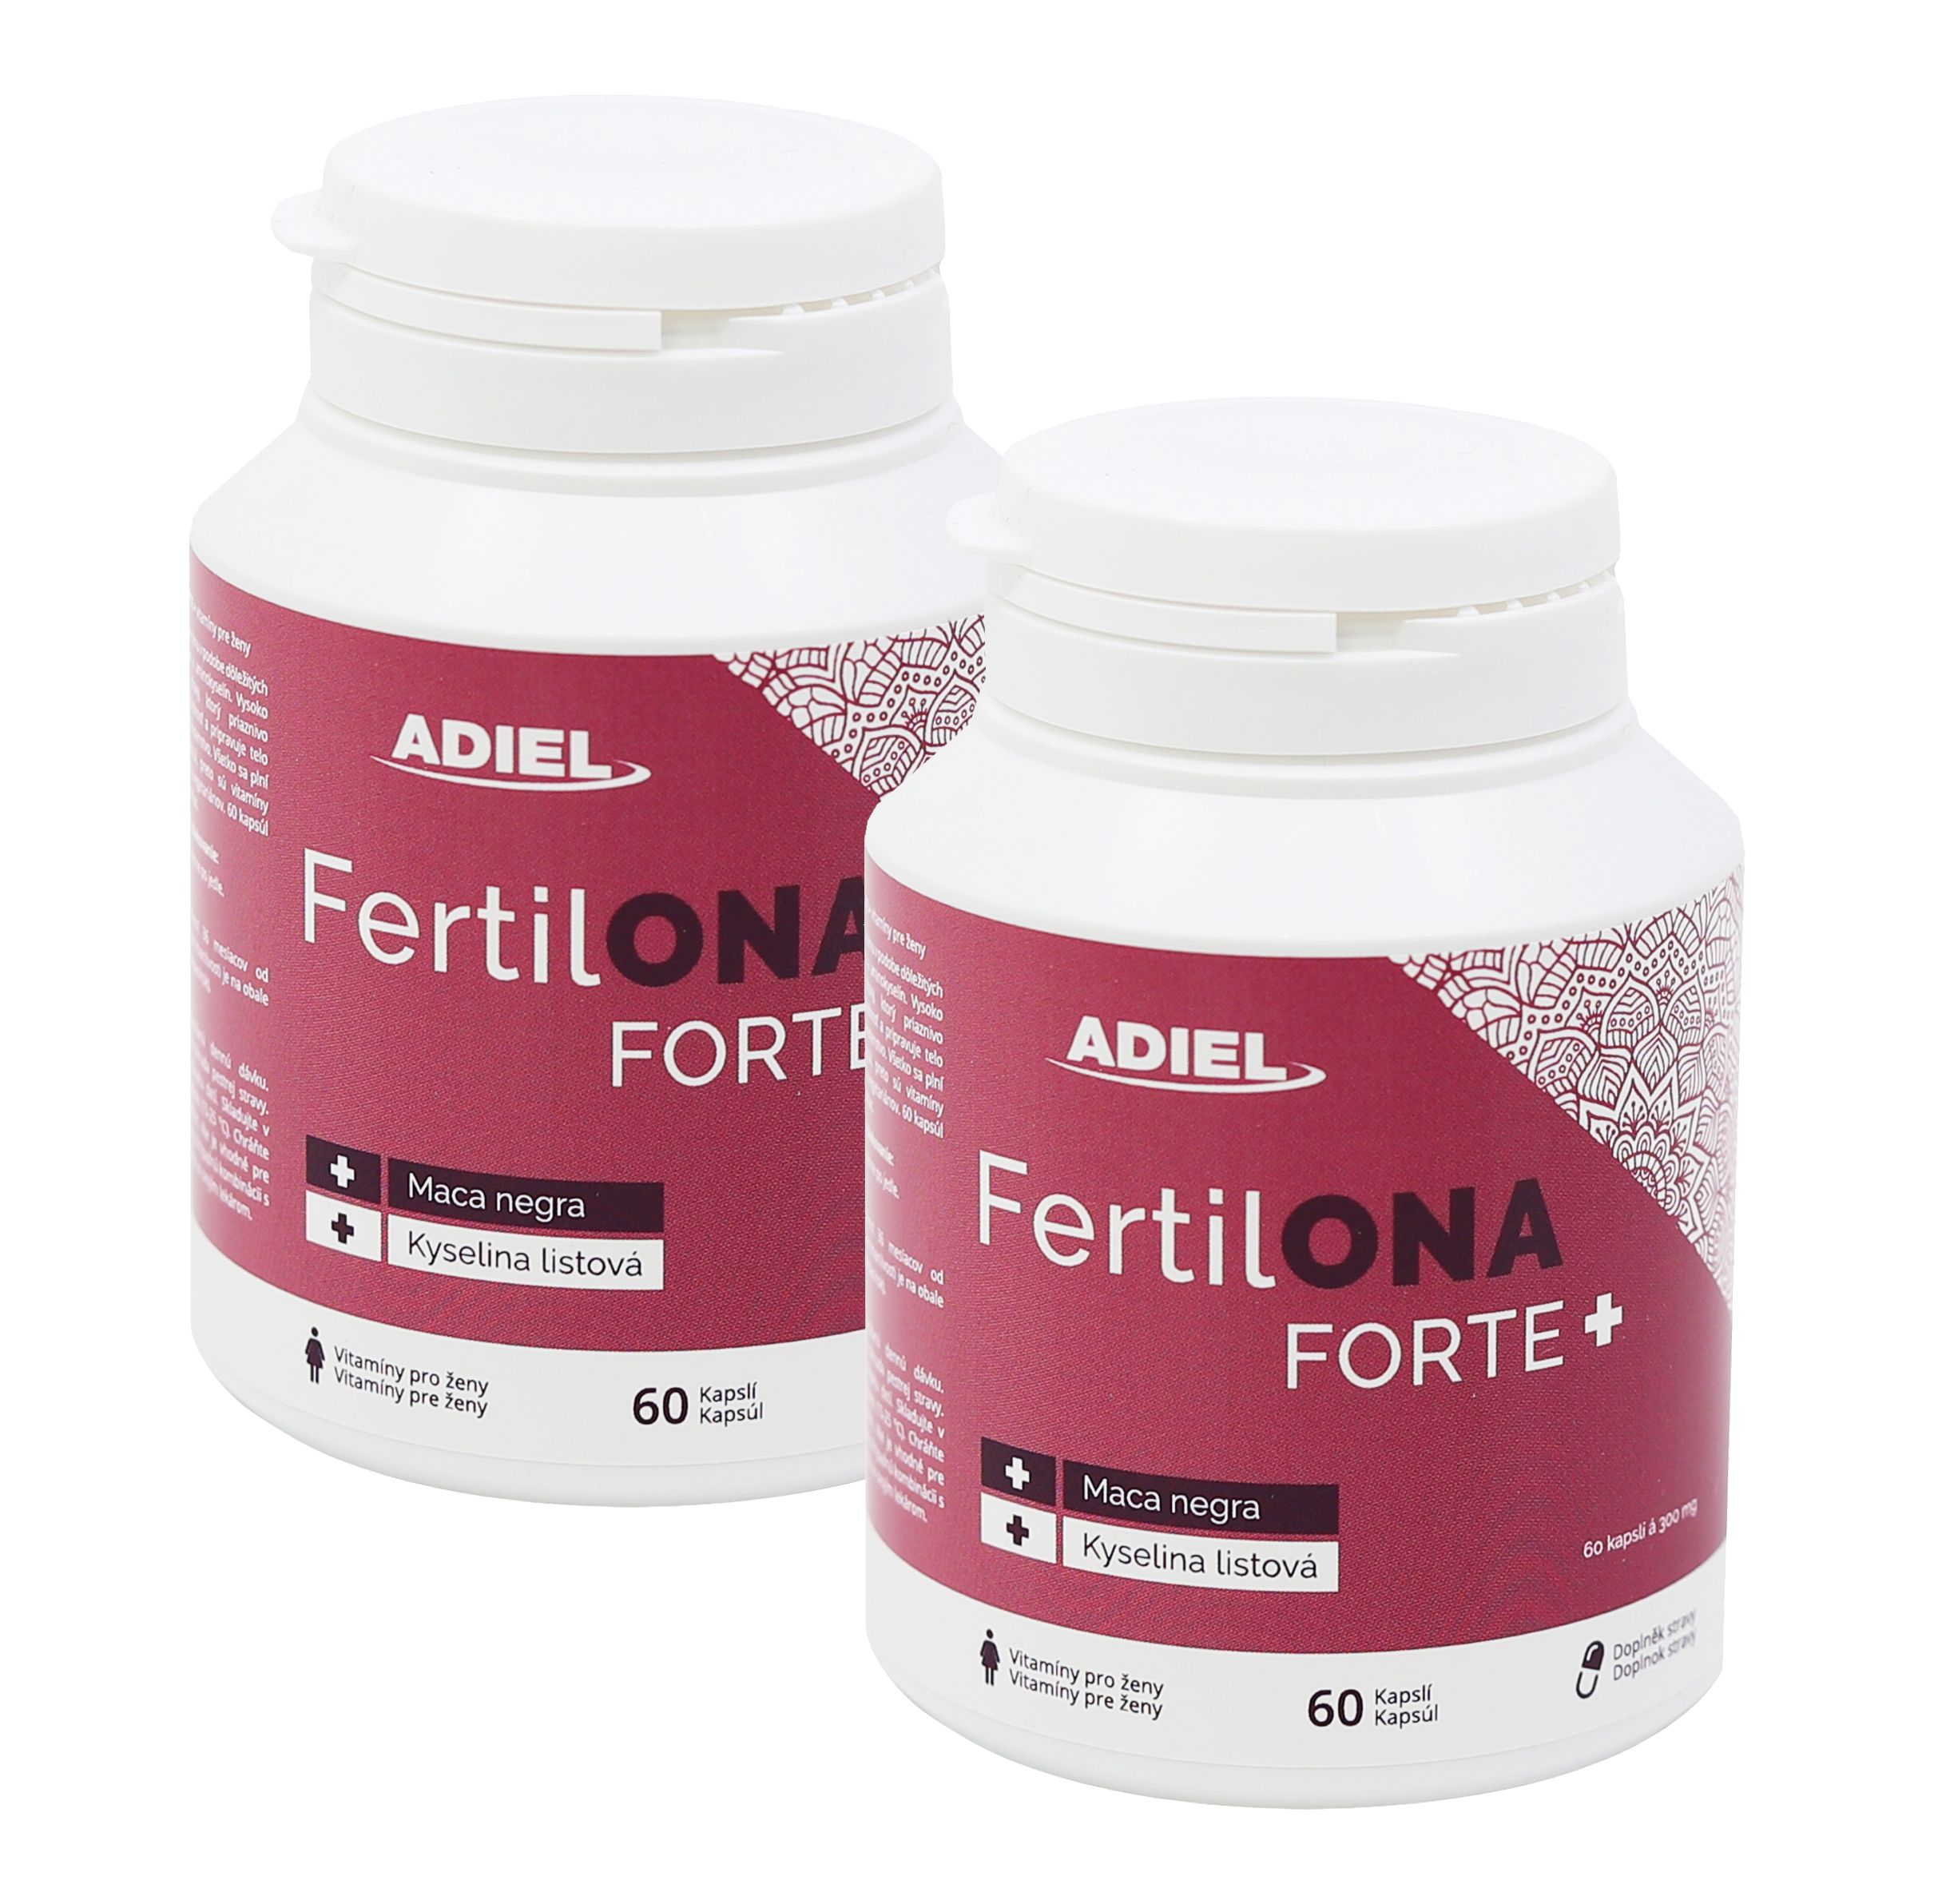 E-shop ADIEL FertilONA forte plus – vitamíny pre ženy 60 kapslí 2 ks v balenie: 2x60 kapslí